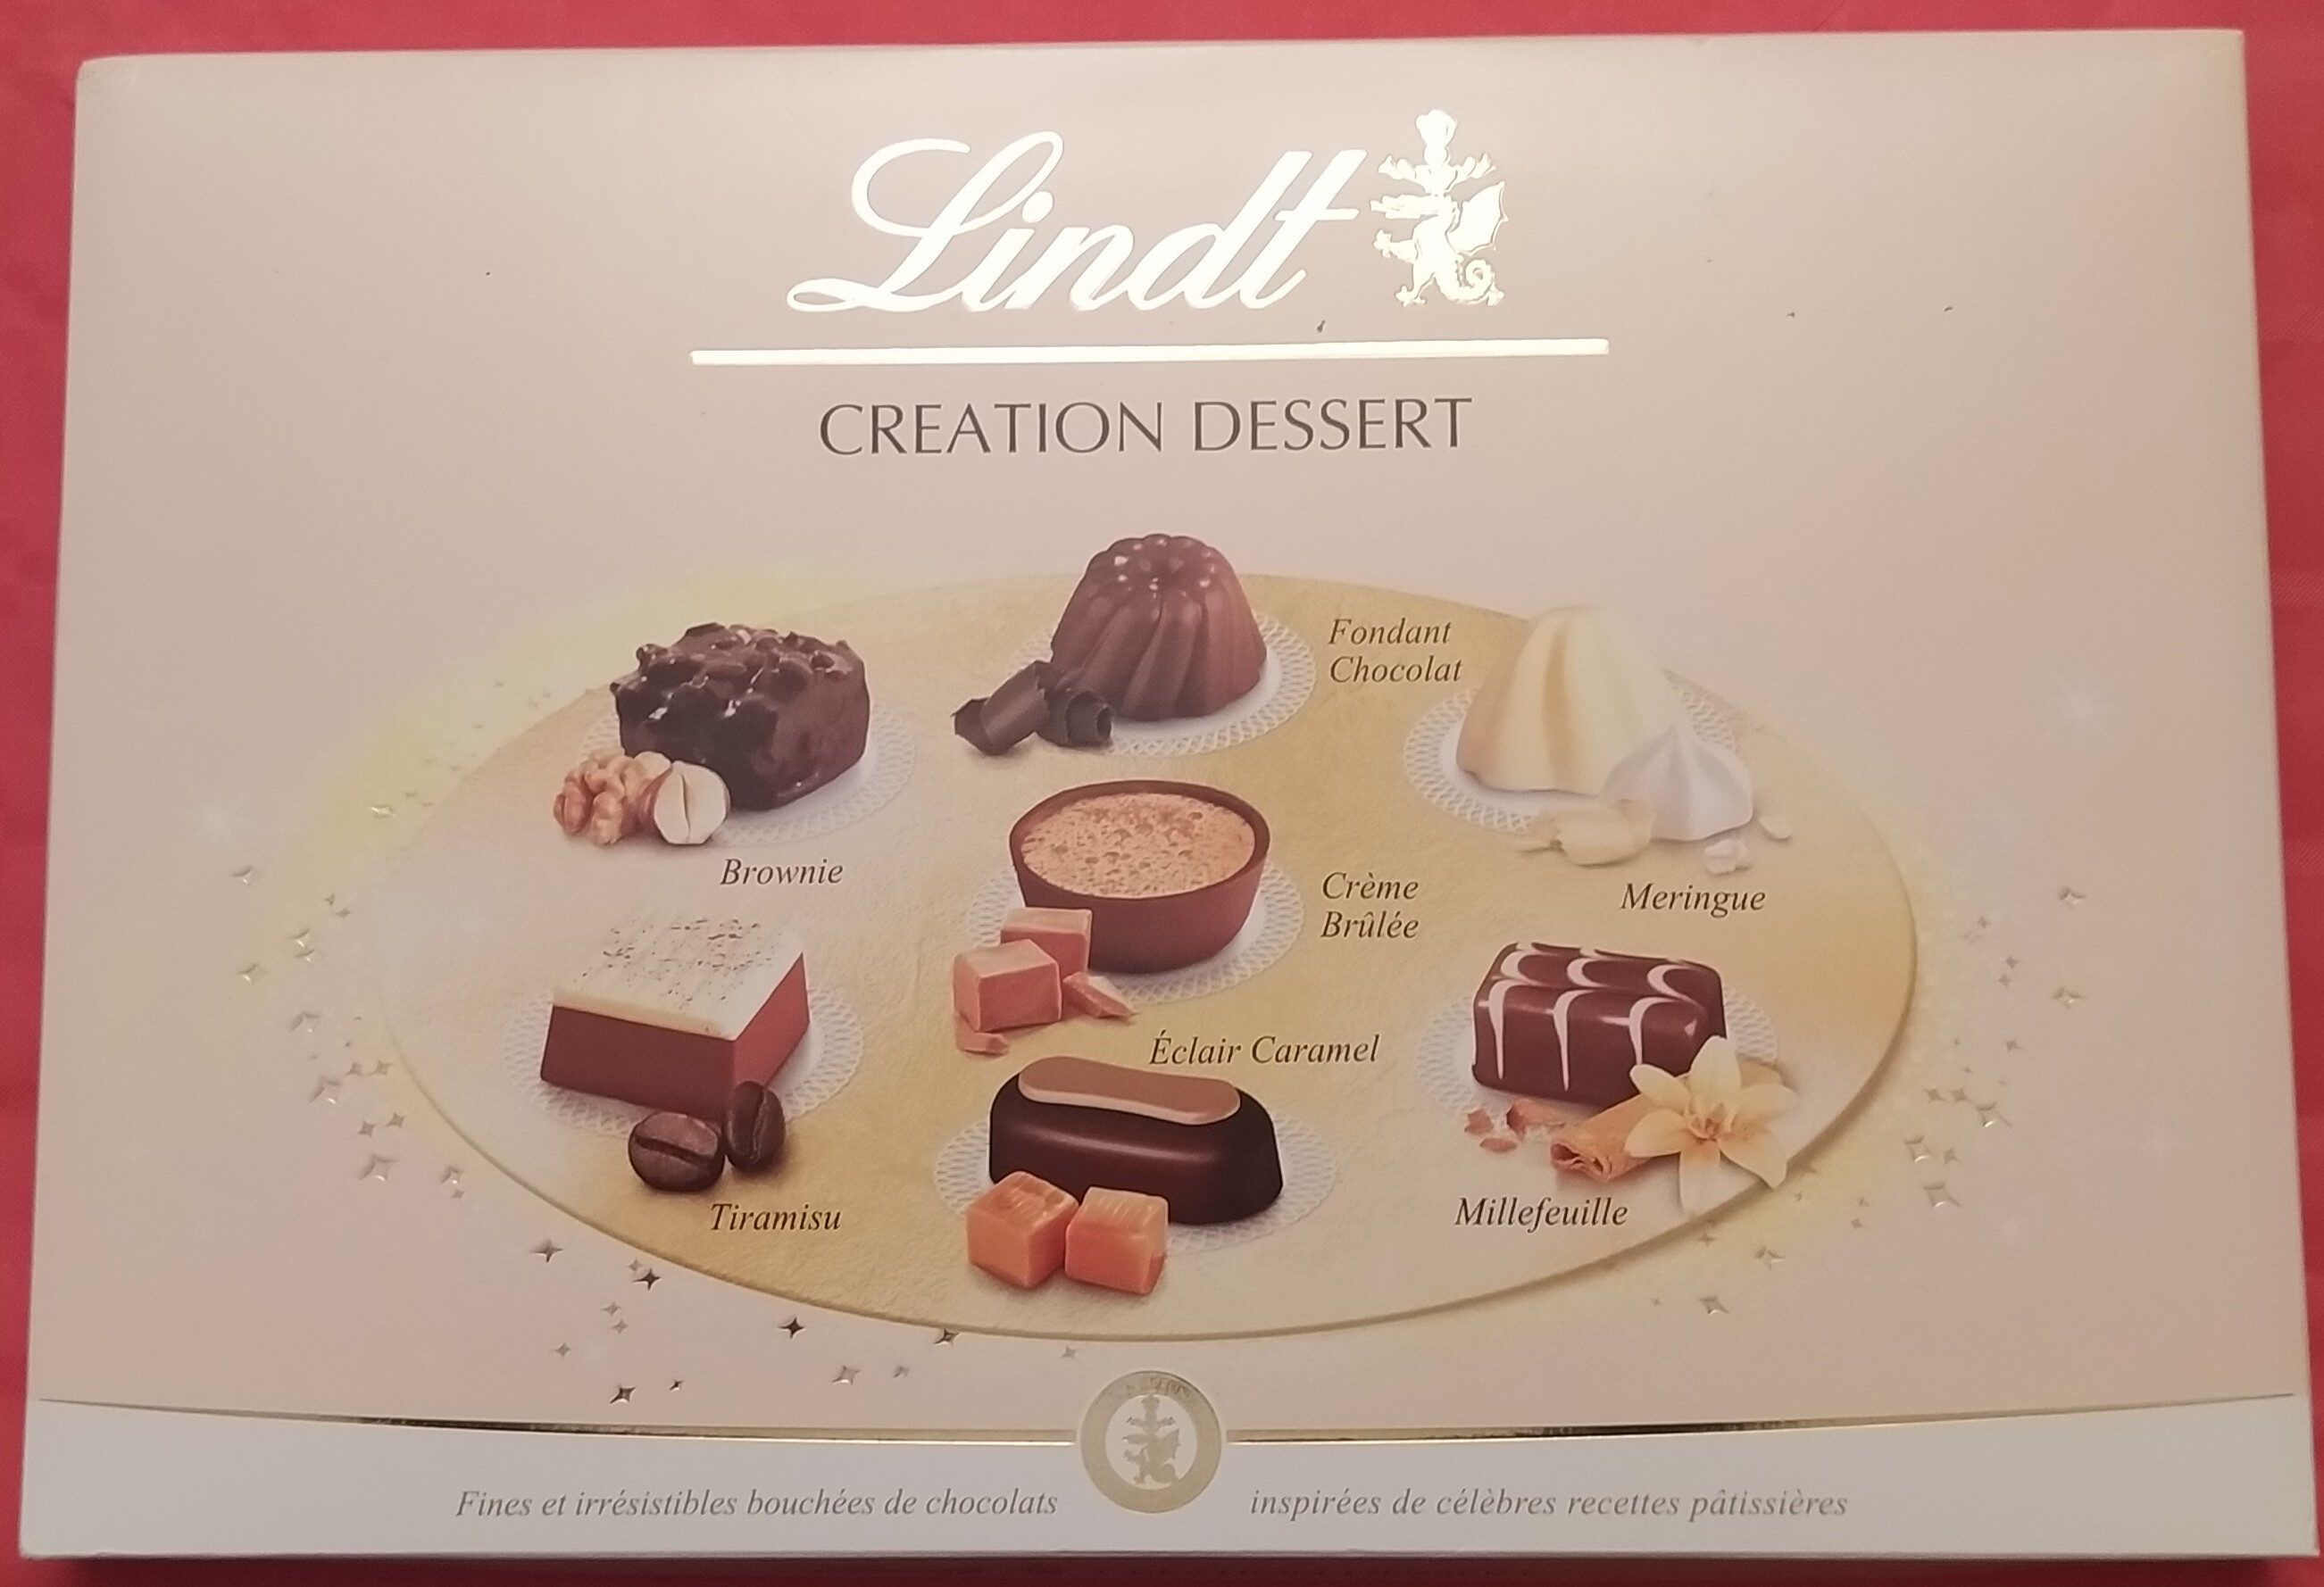 Création dessert - Lindt - 451 g